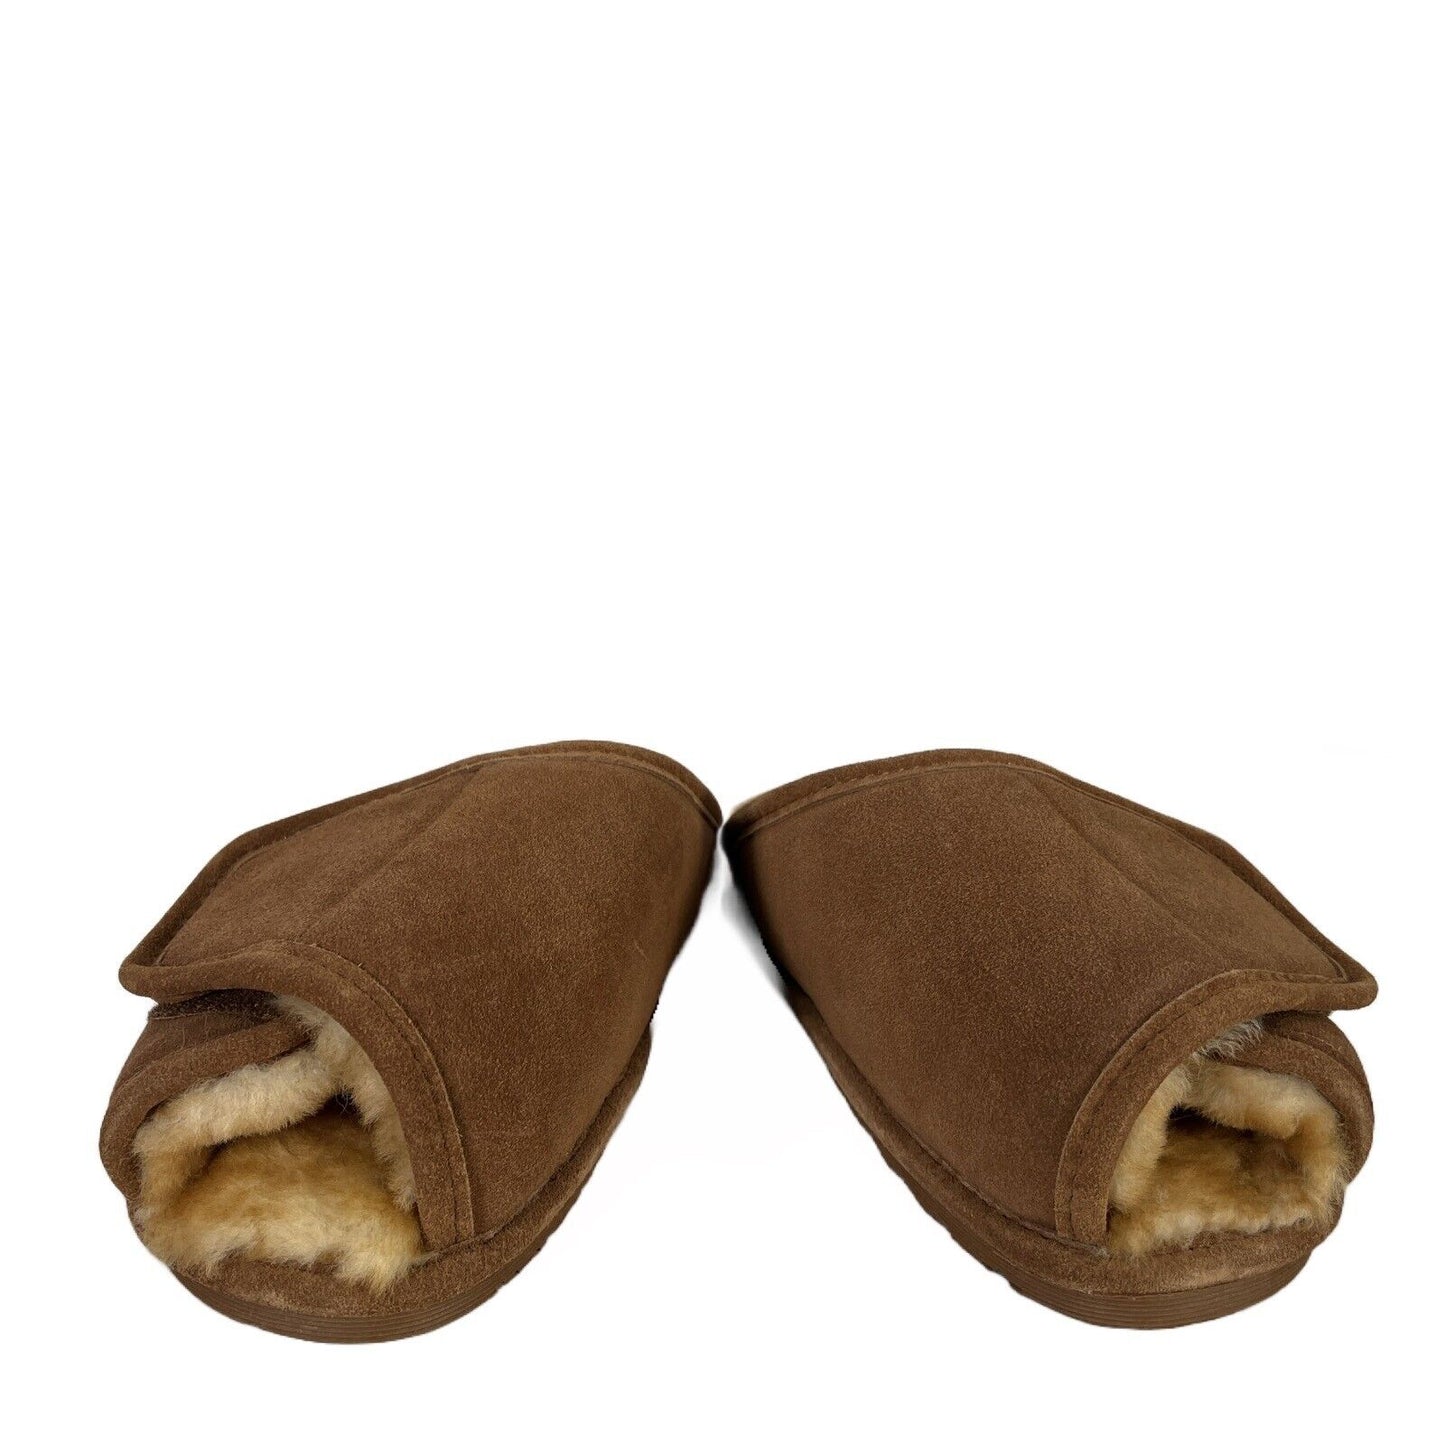 Pantuflas tipo chanclas de piel de oveja marrón de Cloud Nine para hombre - 10-11.5